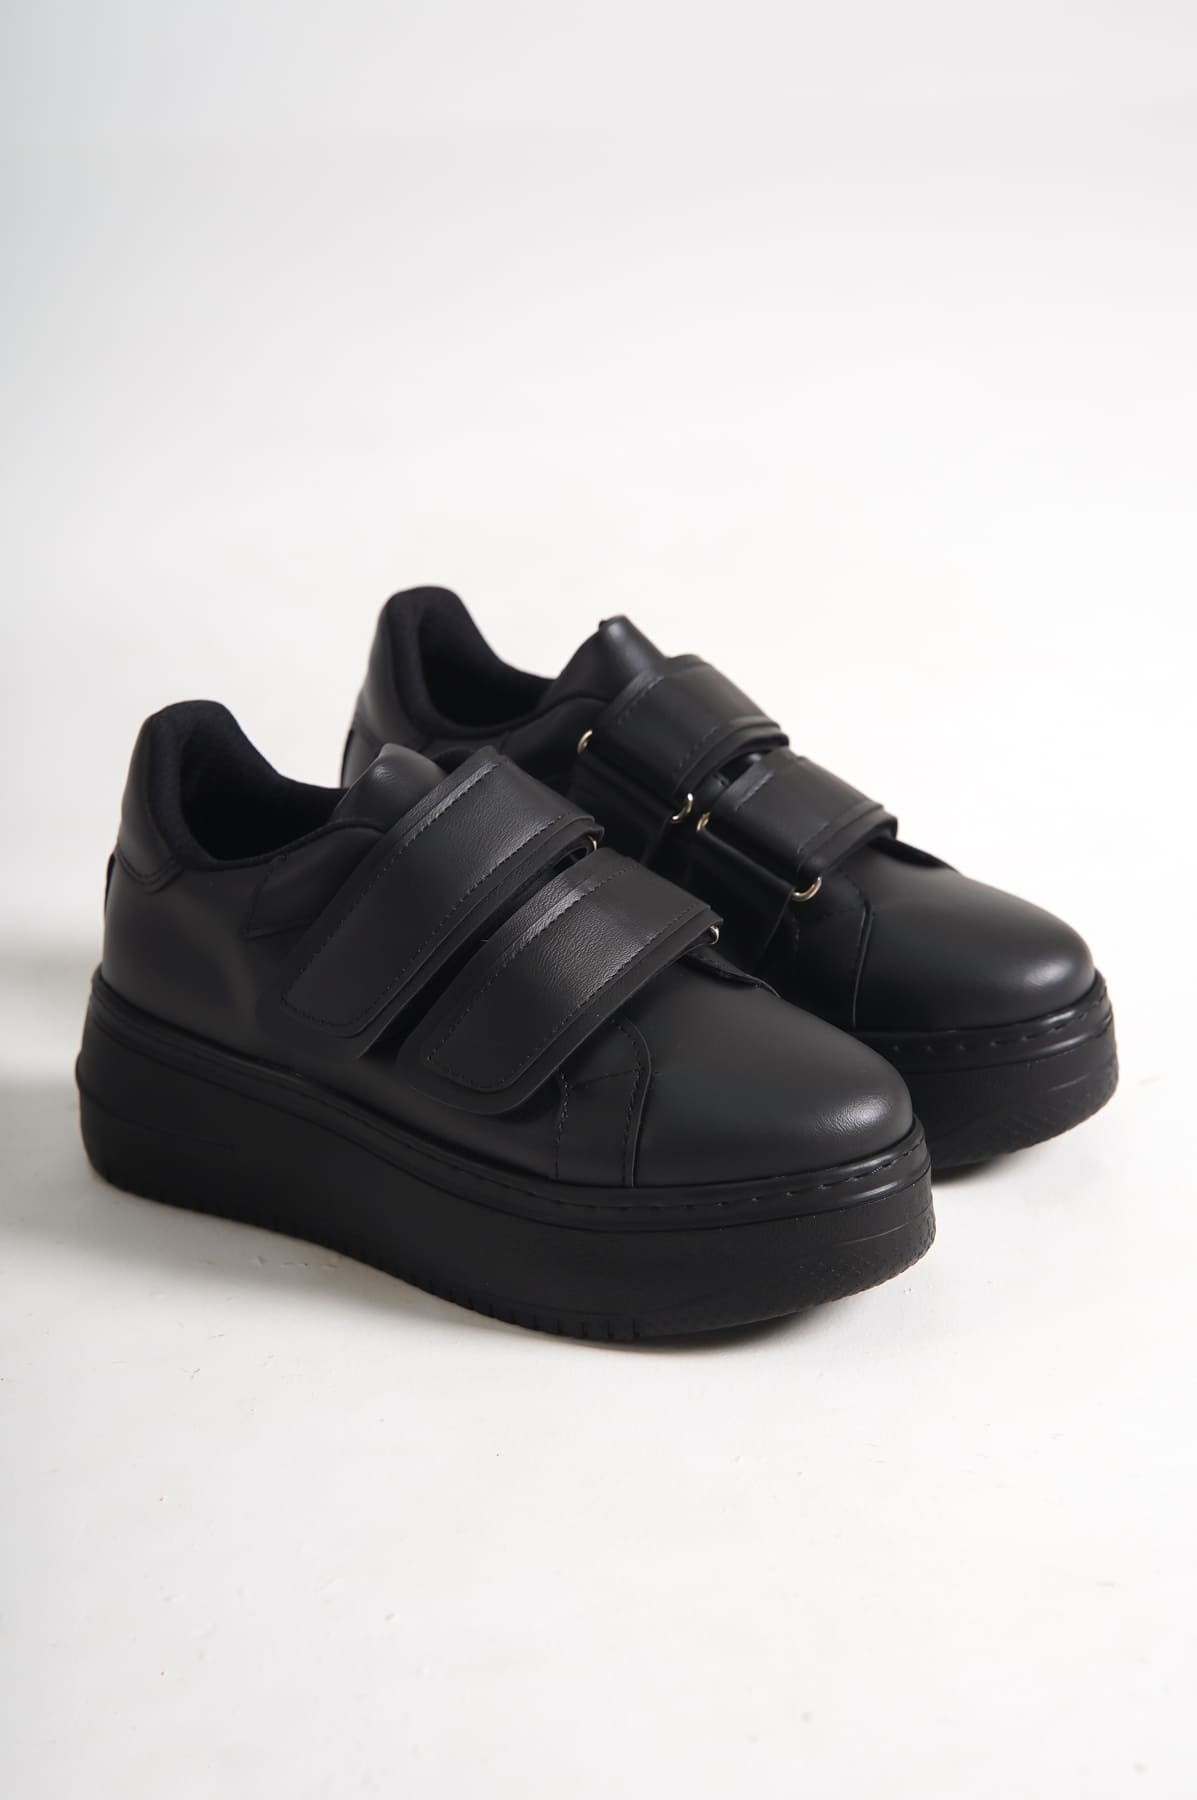 CLZ948  Bağcıksız Cırt Cırtlı Ortopedik Taban Kadın Sneaker Ayakkabı ST Siyah